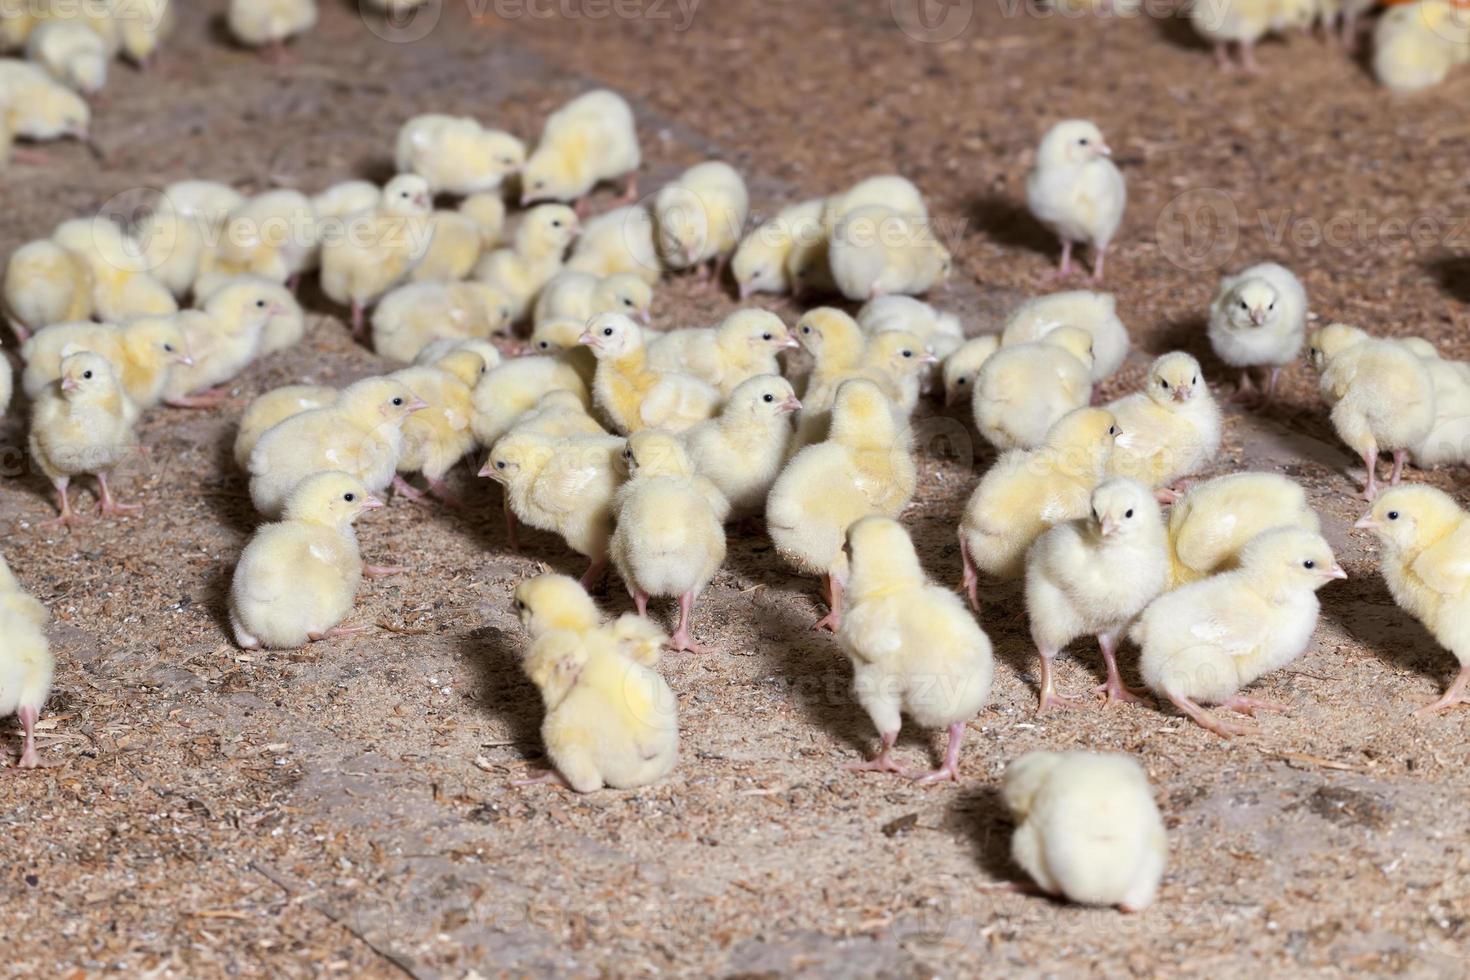 pollitos de pollo en una granja avícola, de cerca foto